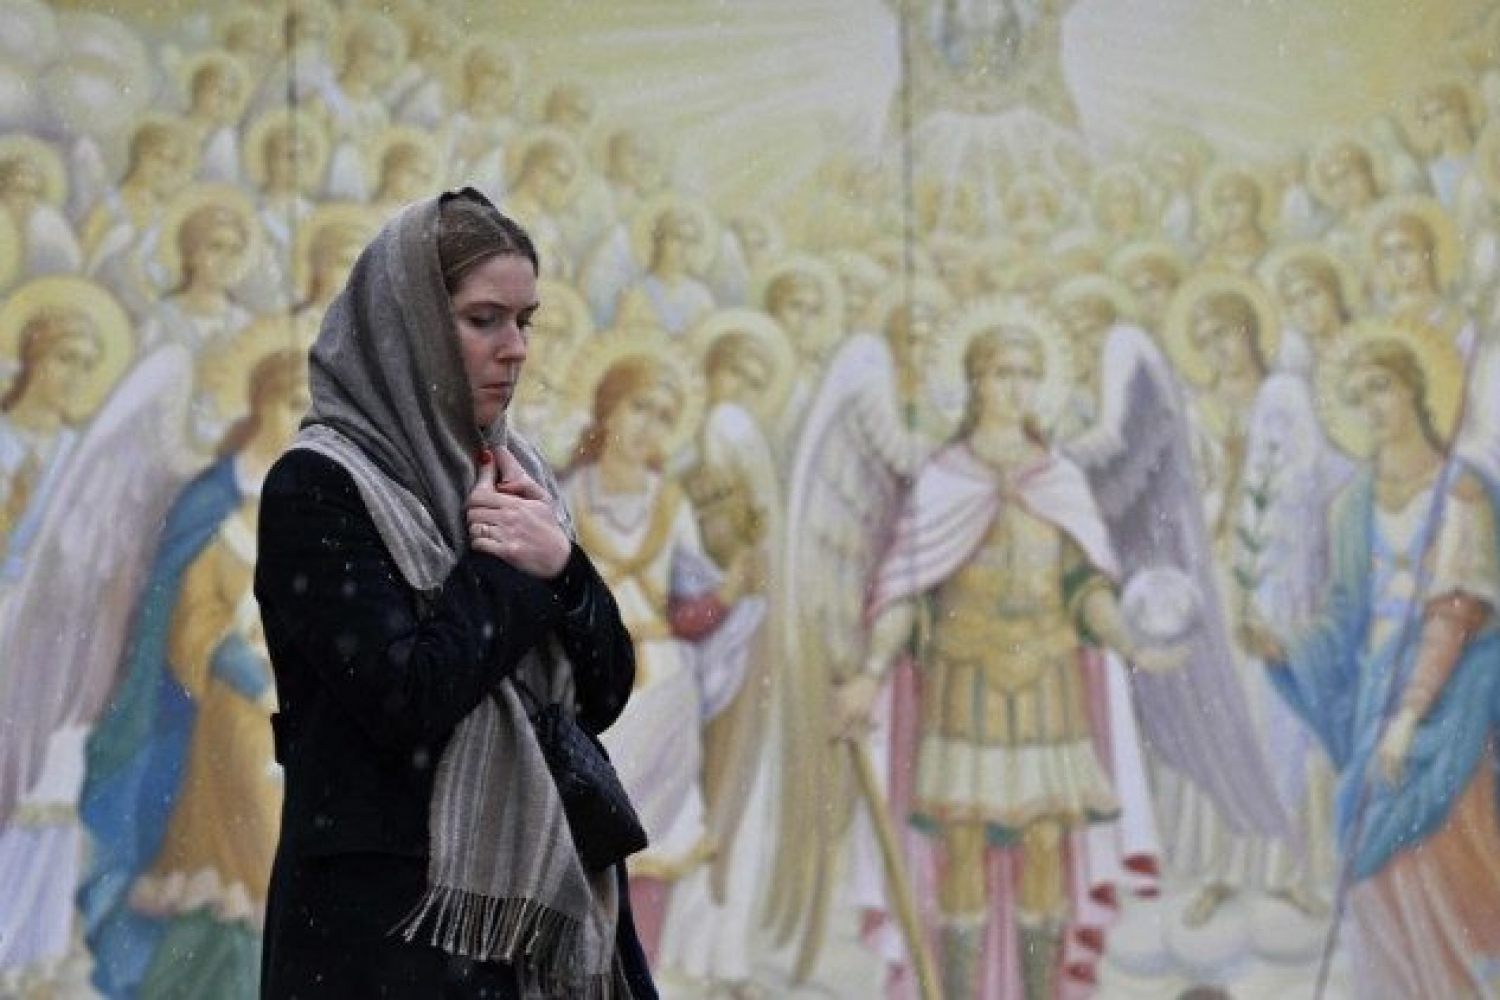 Епископы Украины пригласили к посту на хлебе и воде в интенции справедливого мира